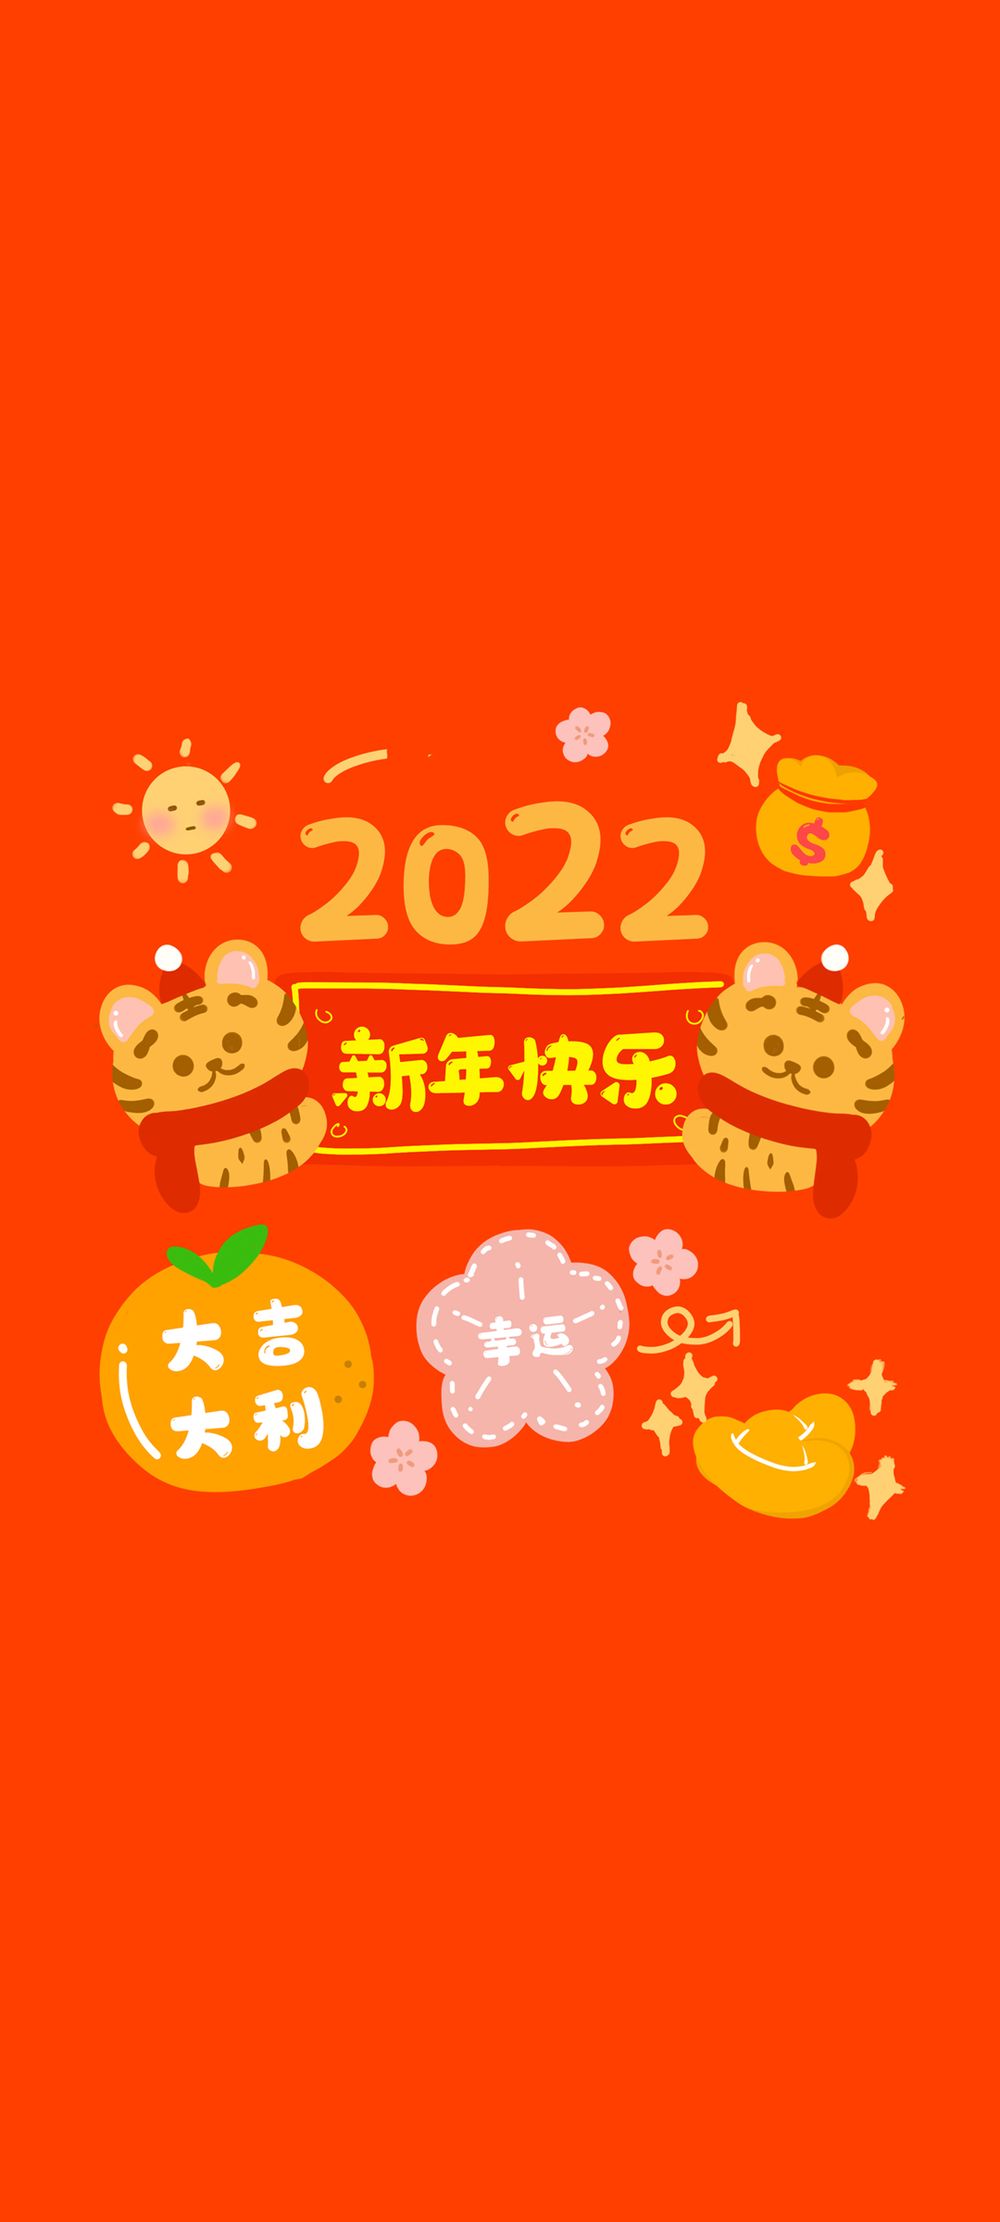 2022新年快乐大吉大利红色背景手机壁纸